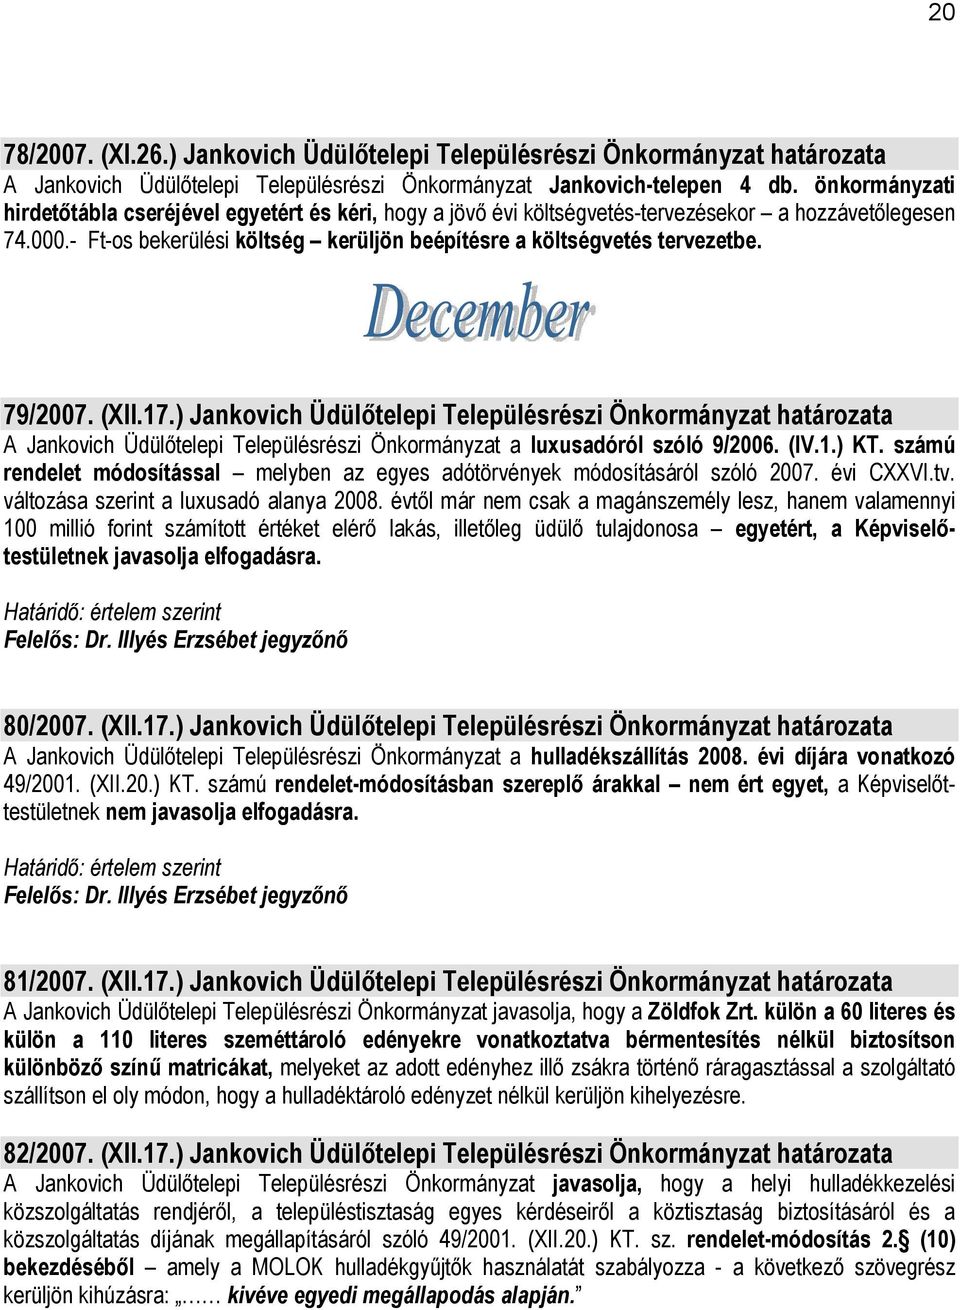 79/2007. (XII.17.) Jankovich Üdülőtelepi Településrészi Önkormányzat határozata A Jankovich Üdülőtelepi Településrészi Önkormányzat a luxusadóról szóló 9/2006. (IV.1.) KT.